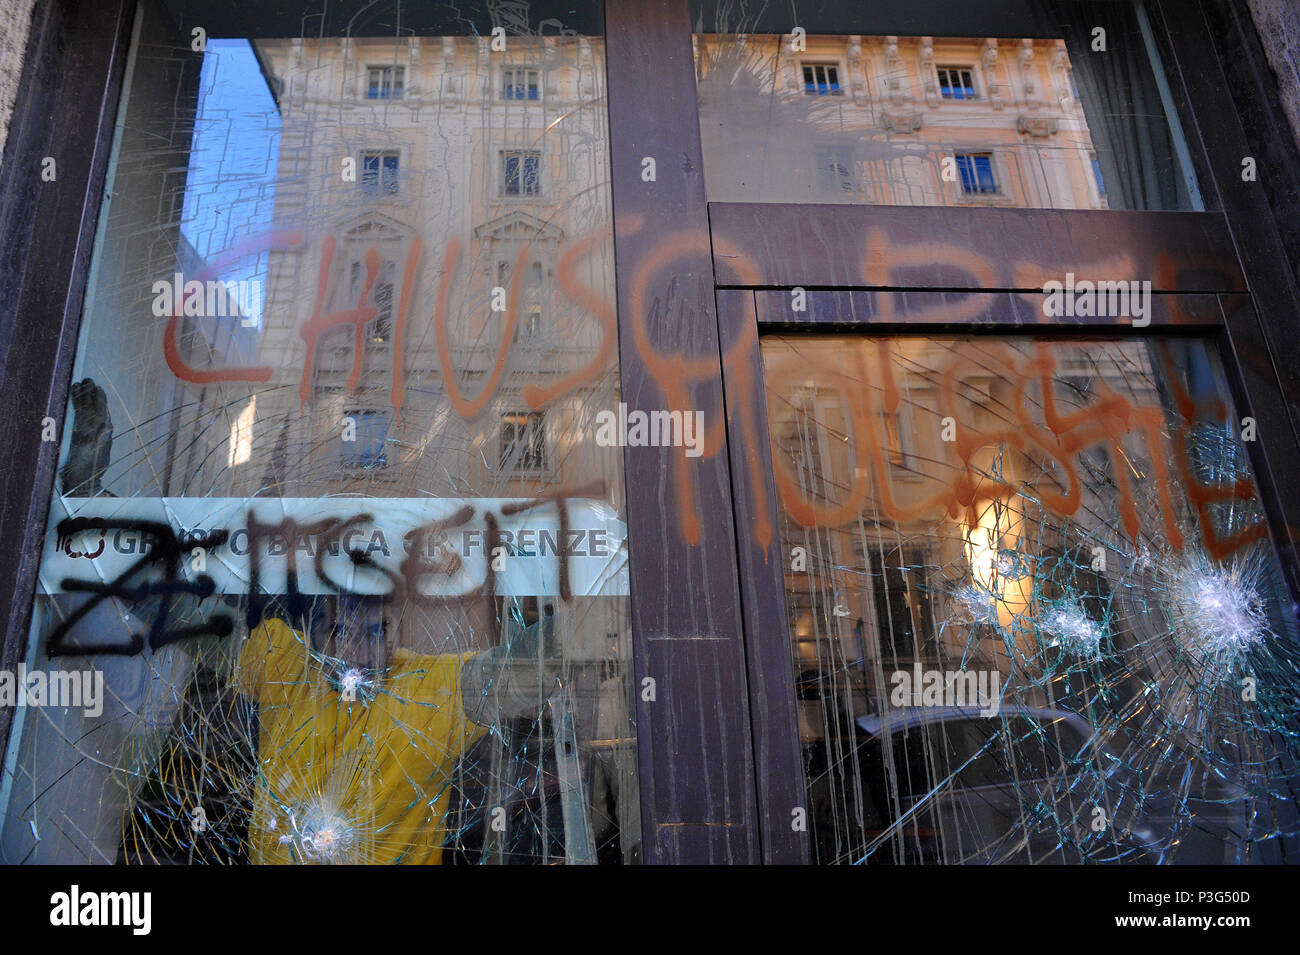 Rom. Gehetzt windows Bei einer Bank Eingang, Schule Protest gegen die Politik der Regierung. Italien. Stockfoto